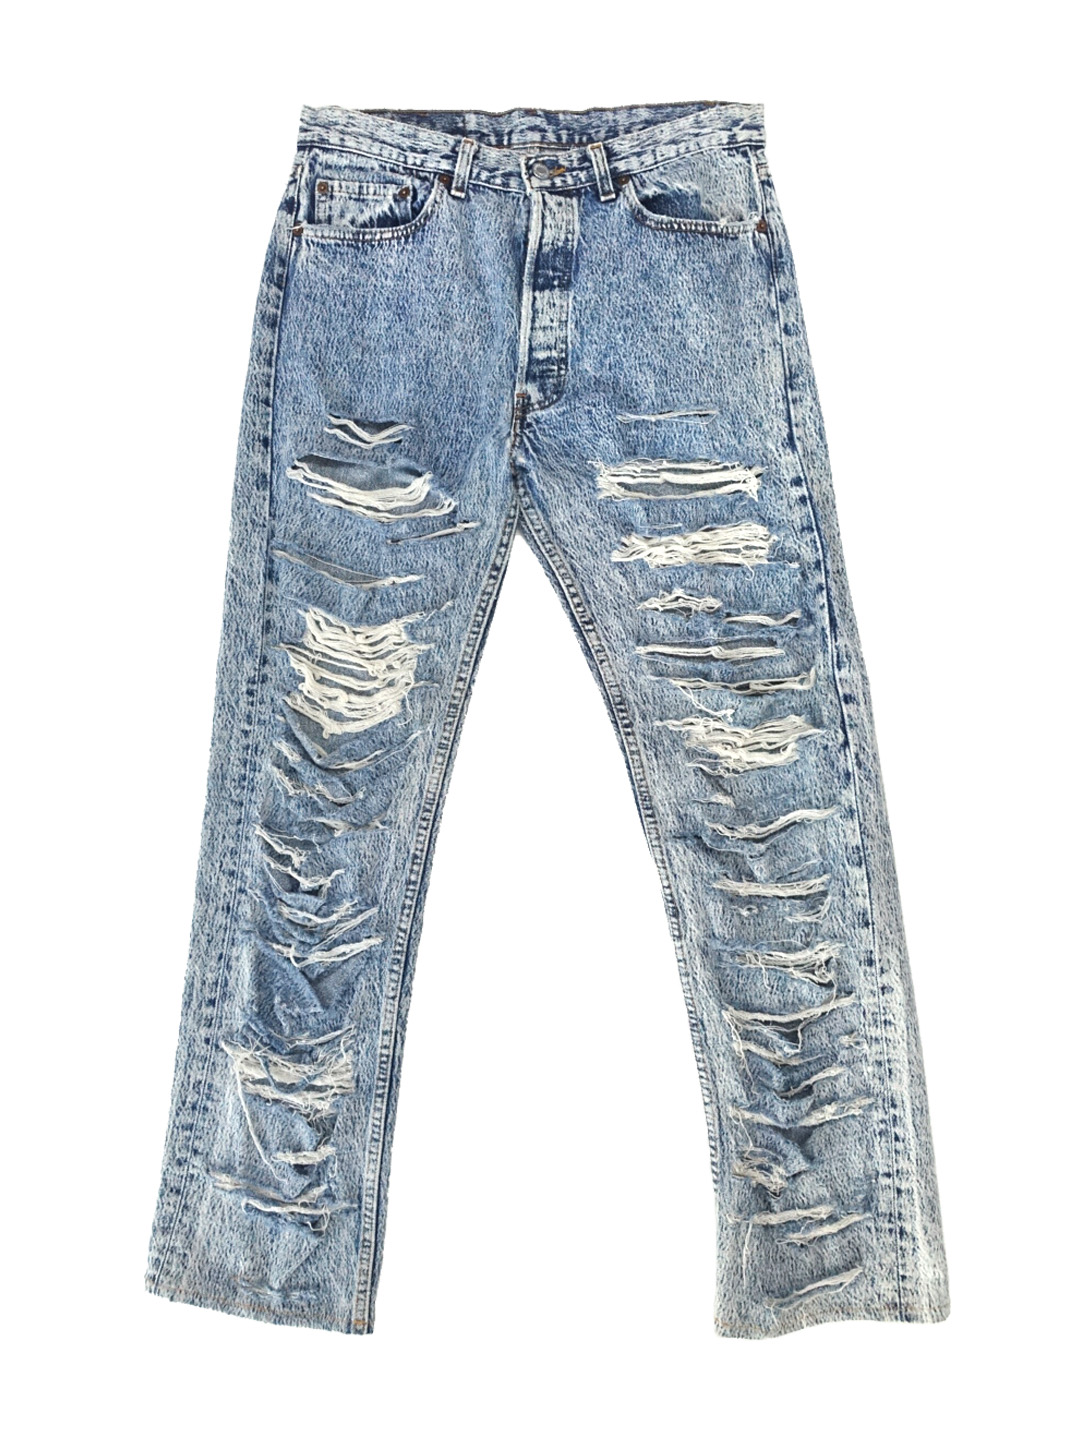 LEVISDamaged jeans